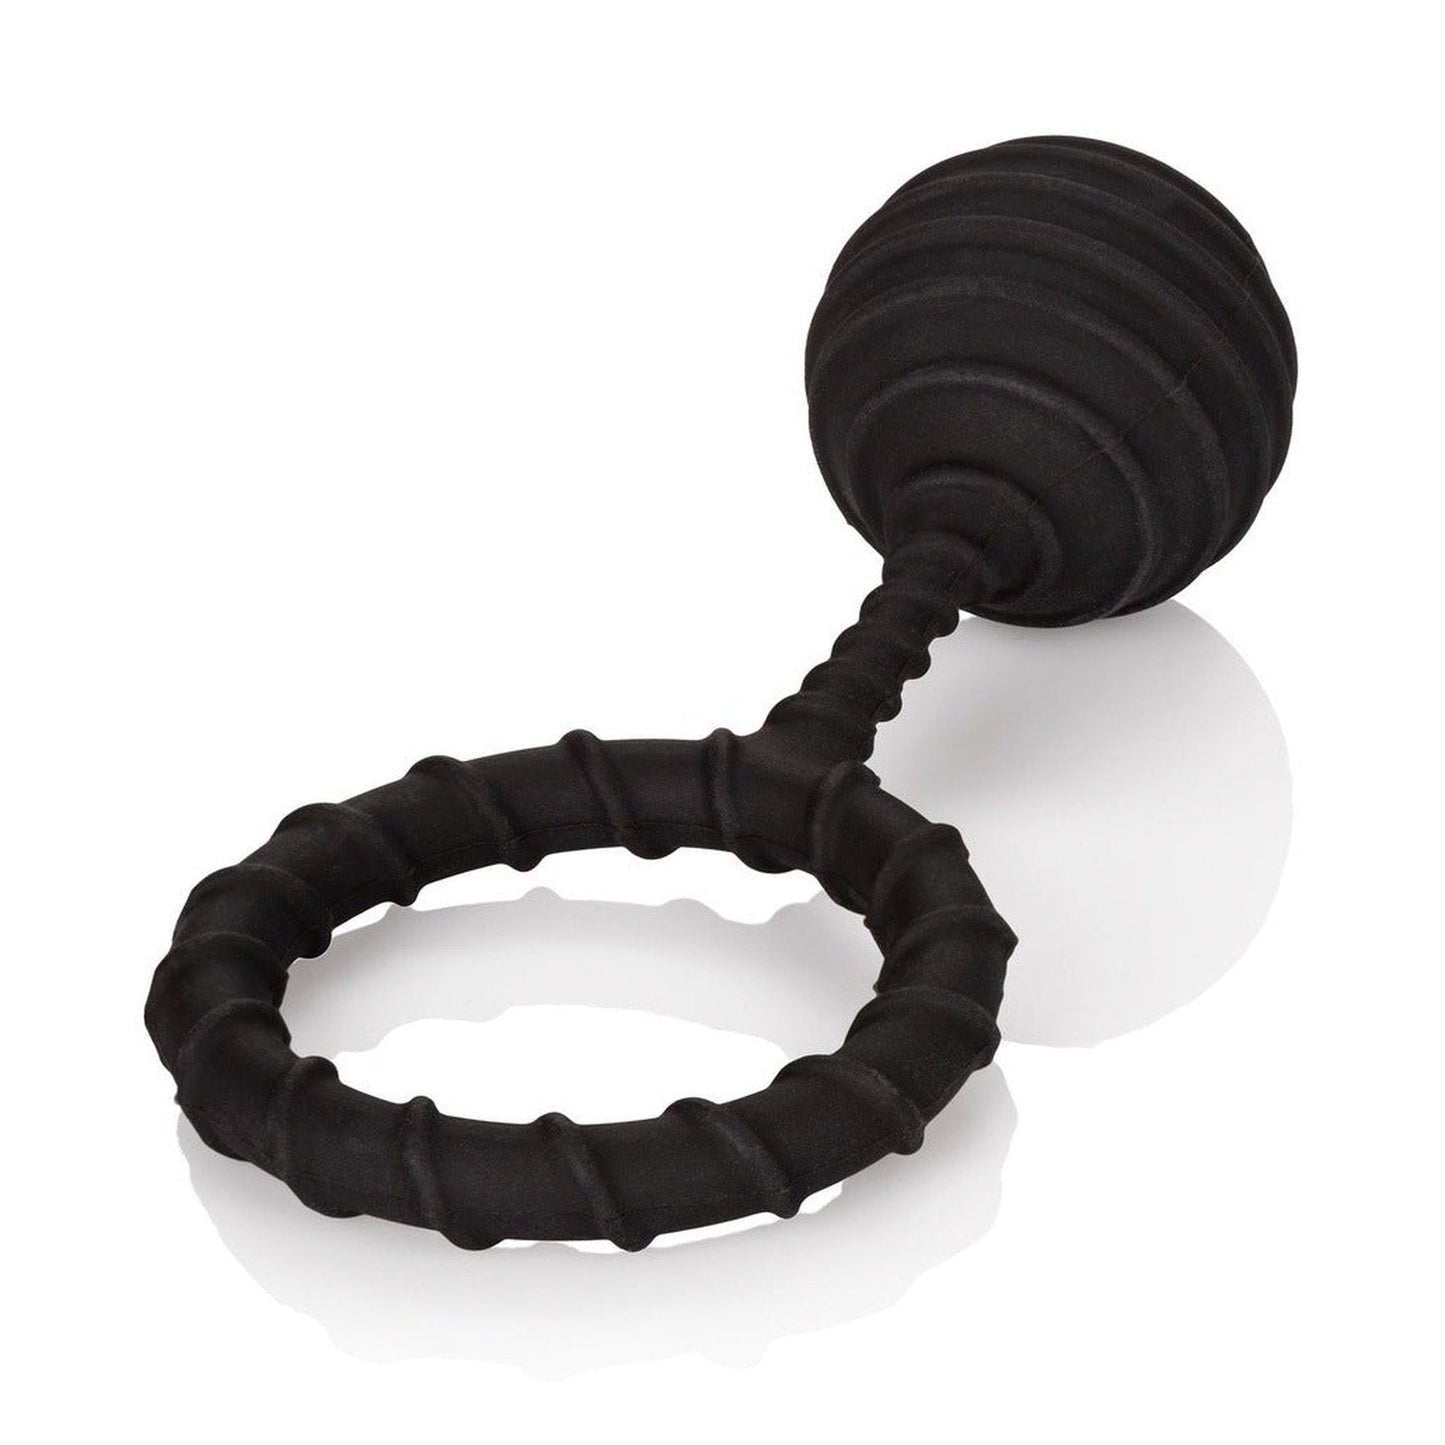 Weighted Ring Extra Large - Anello fallico in 100% puro silicone, elastico e confortevole - Nero, Peso 110 gr. California Exotic Novelties